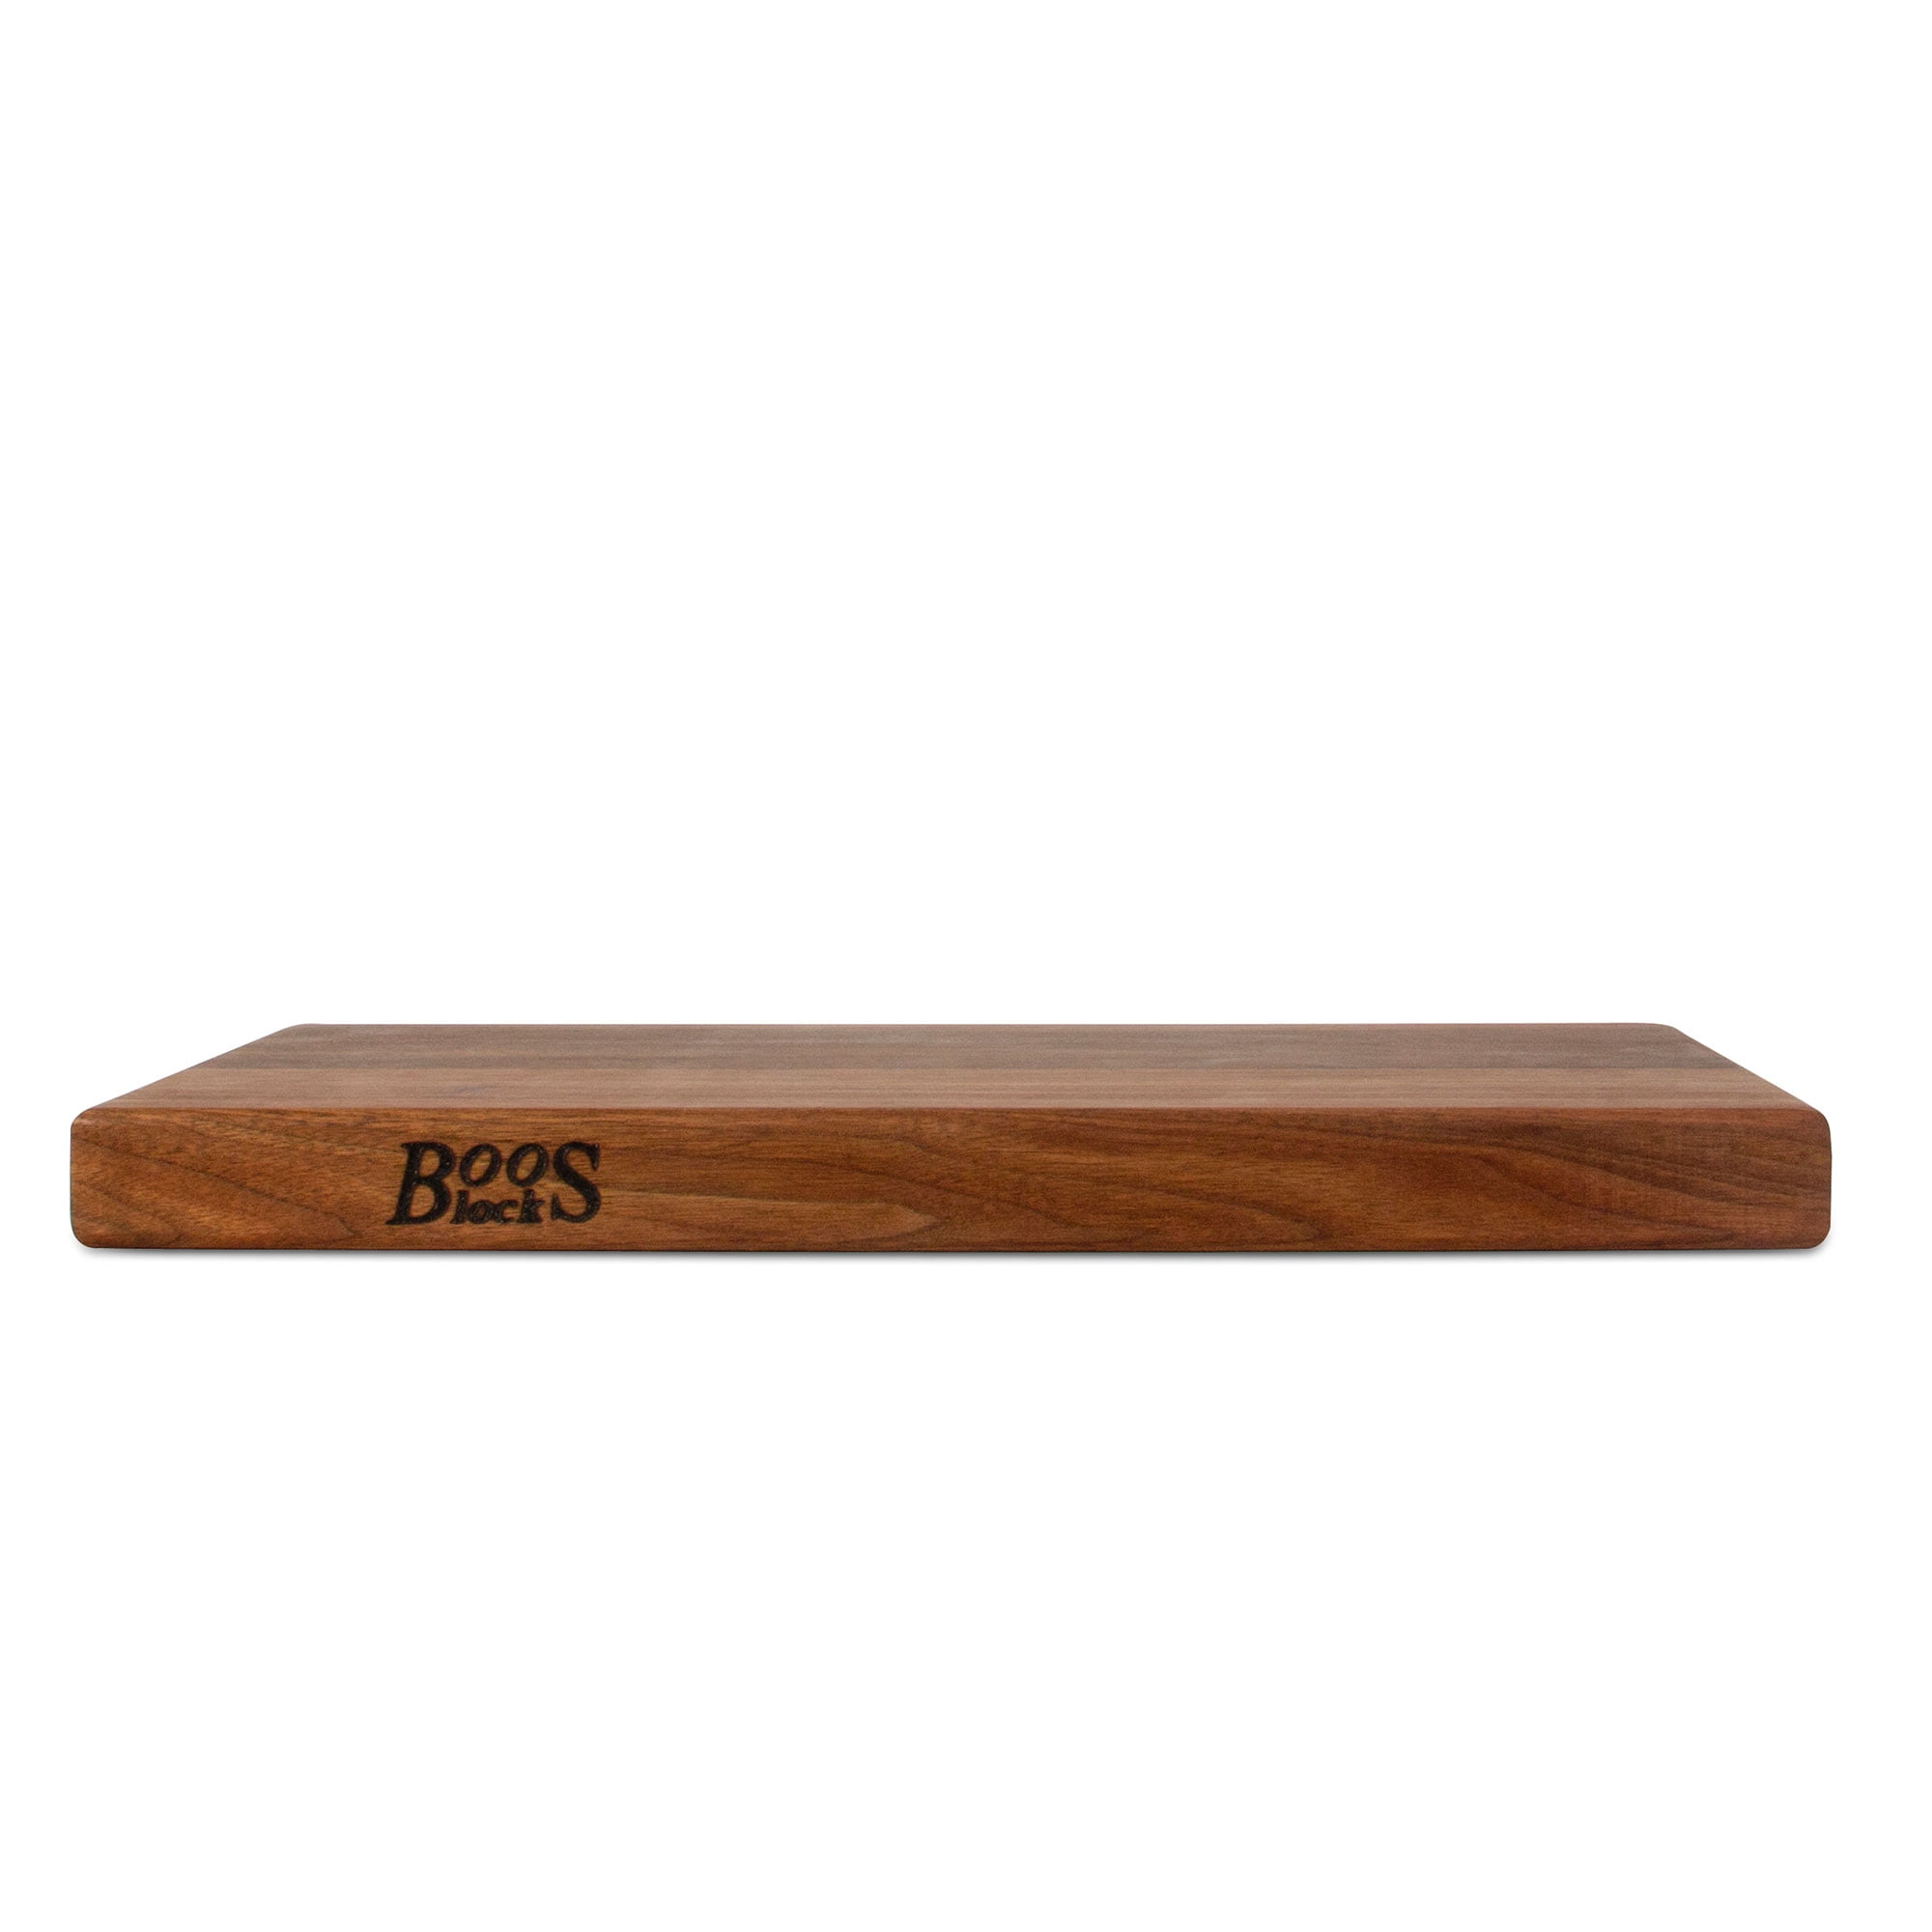 John Boos Walnut Wood Cutting Board - 18L x 12W x 1 1/2H